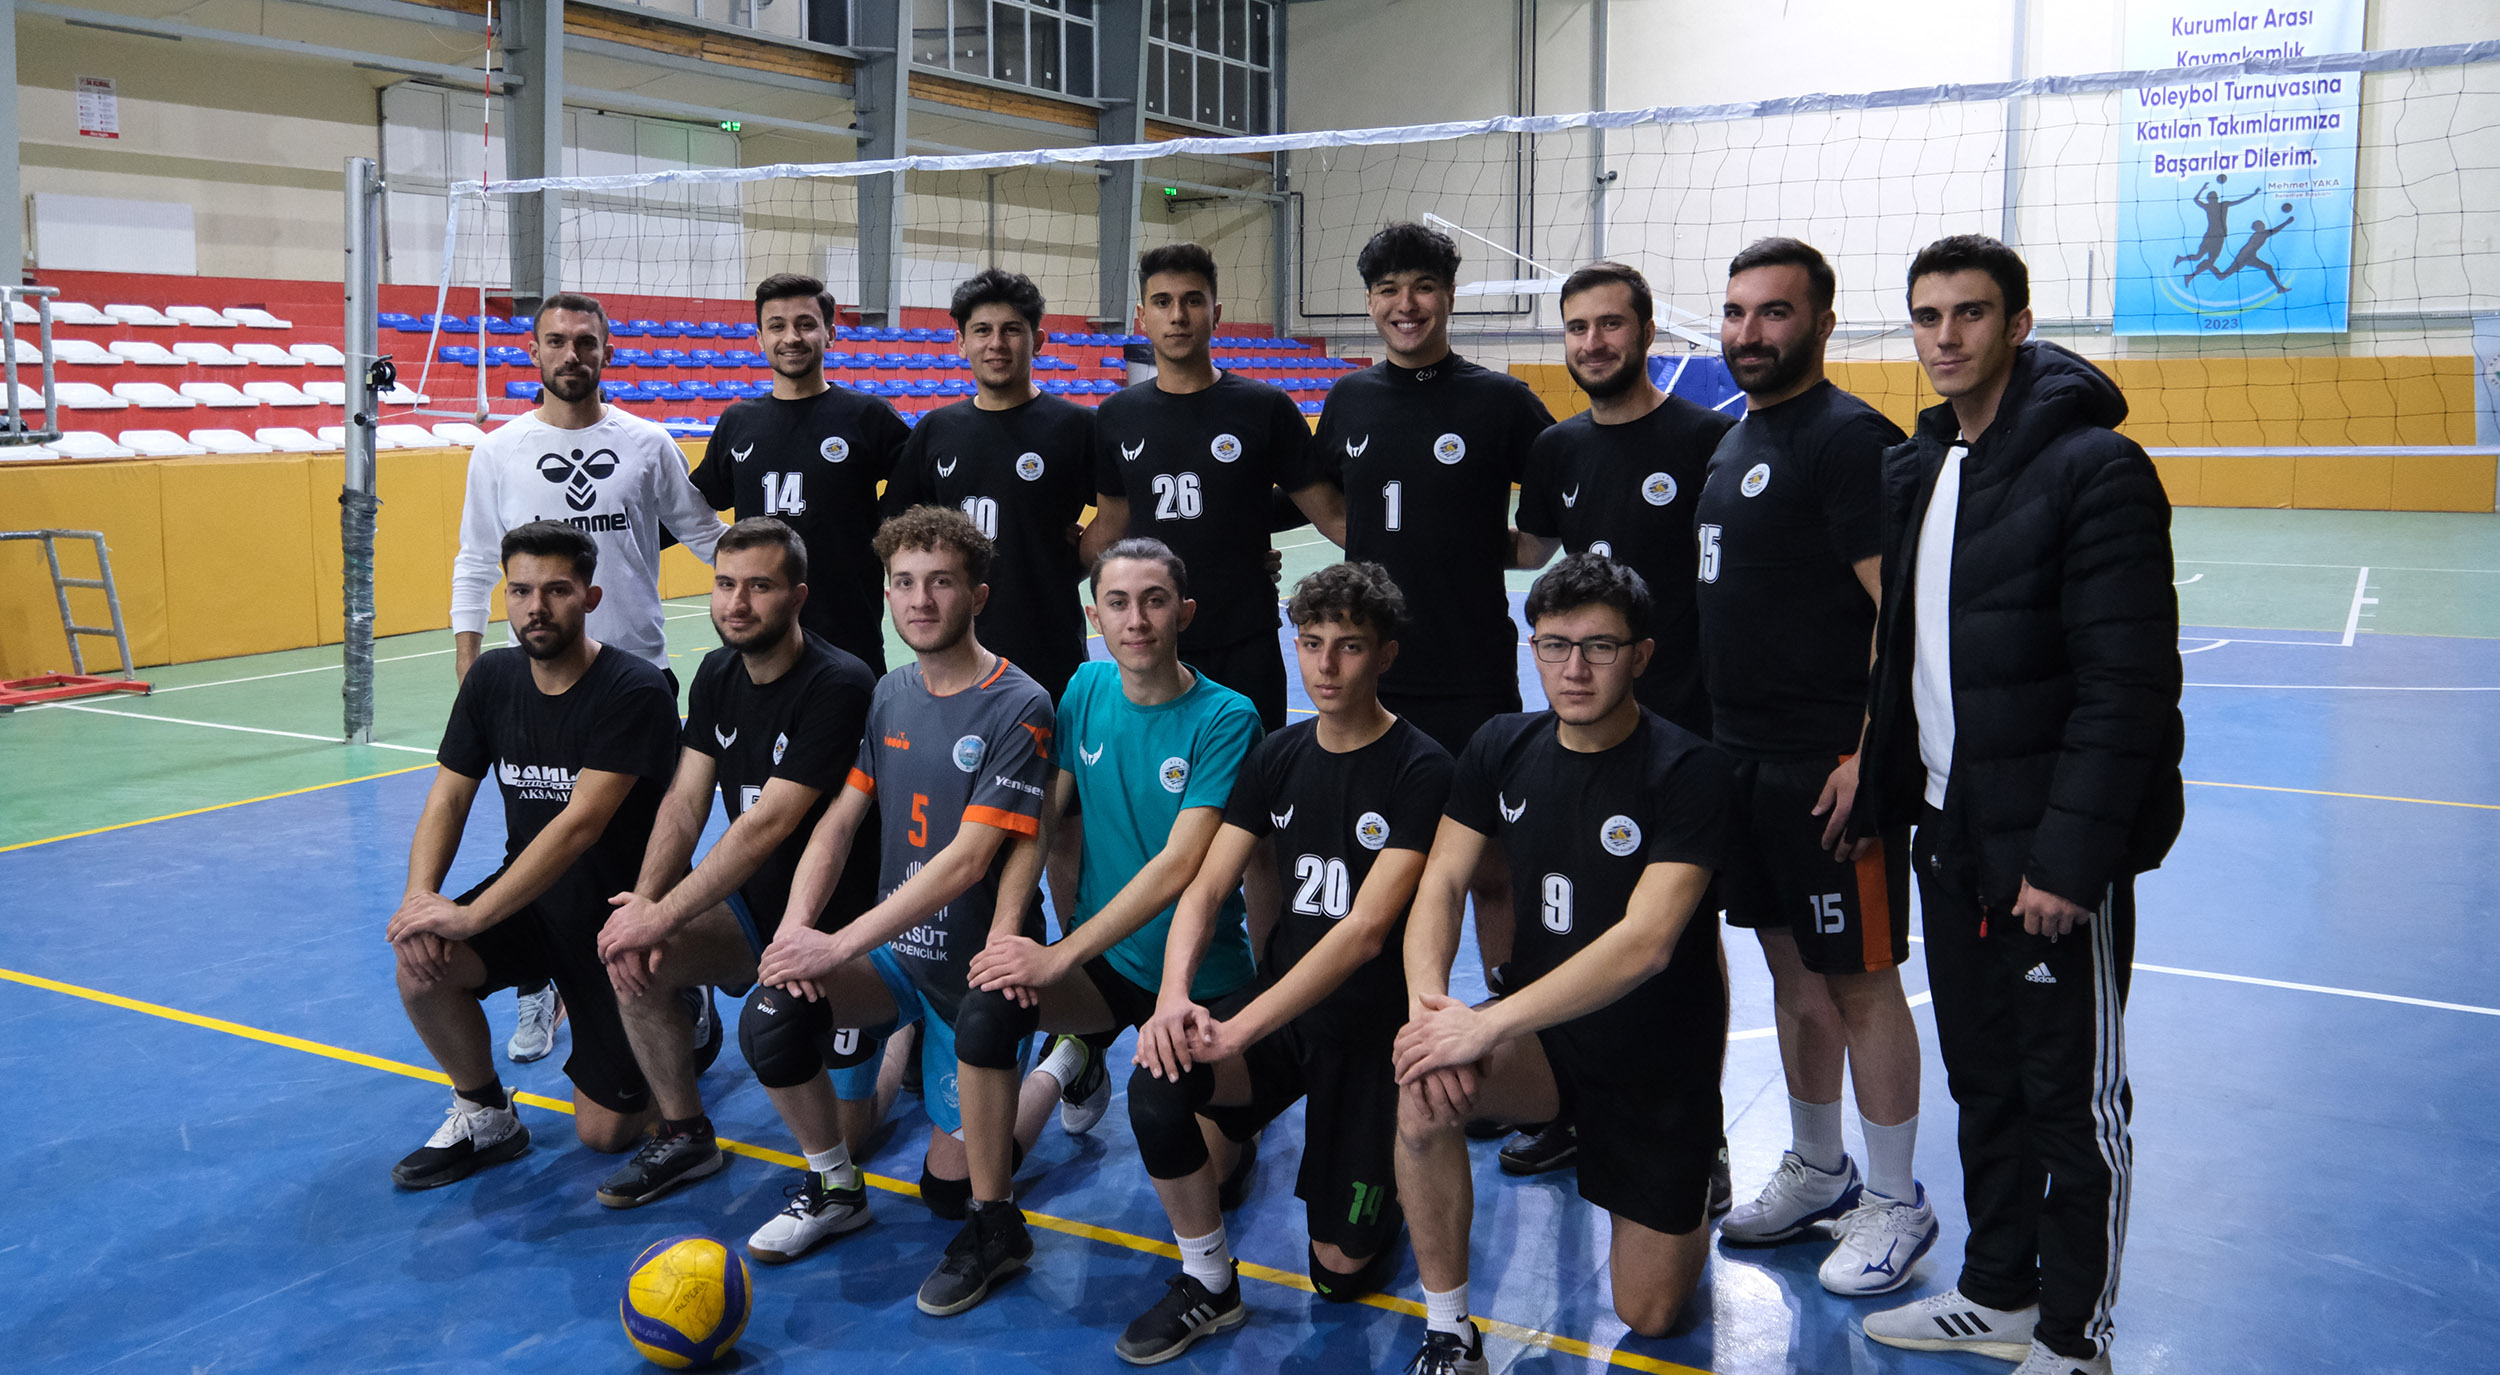 Karapınar Anadolu Leoparları Birlik Akademisi Voleybol Kulübü kuruldu